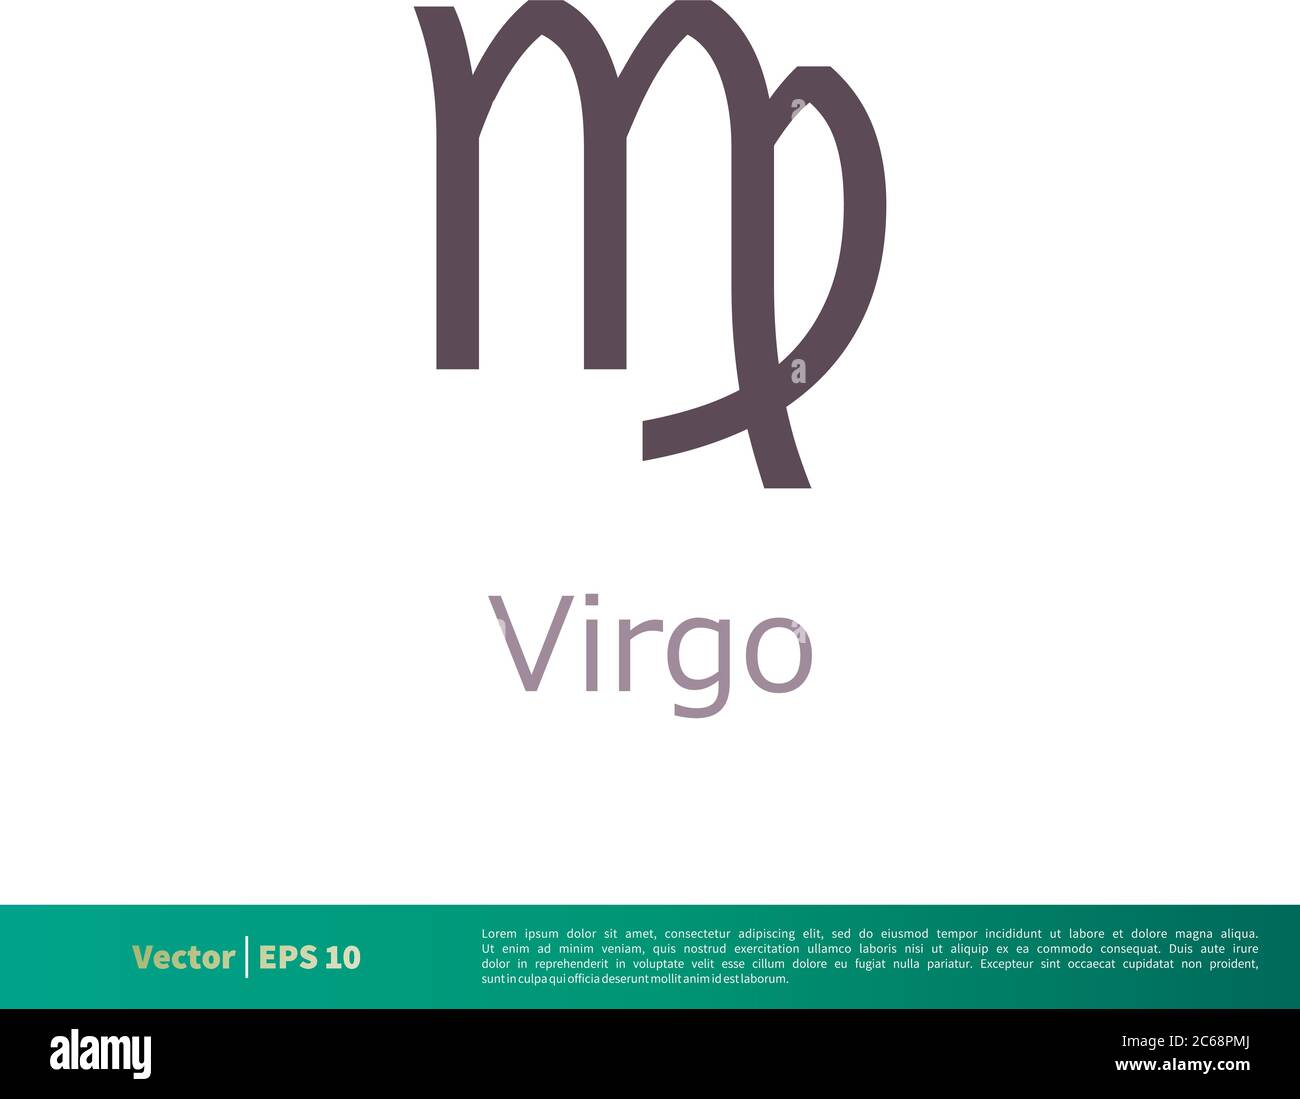 El top 48 imagen cual es el logo de virgo - Abzlocal.mx